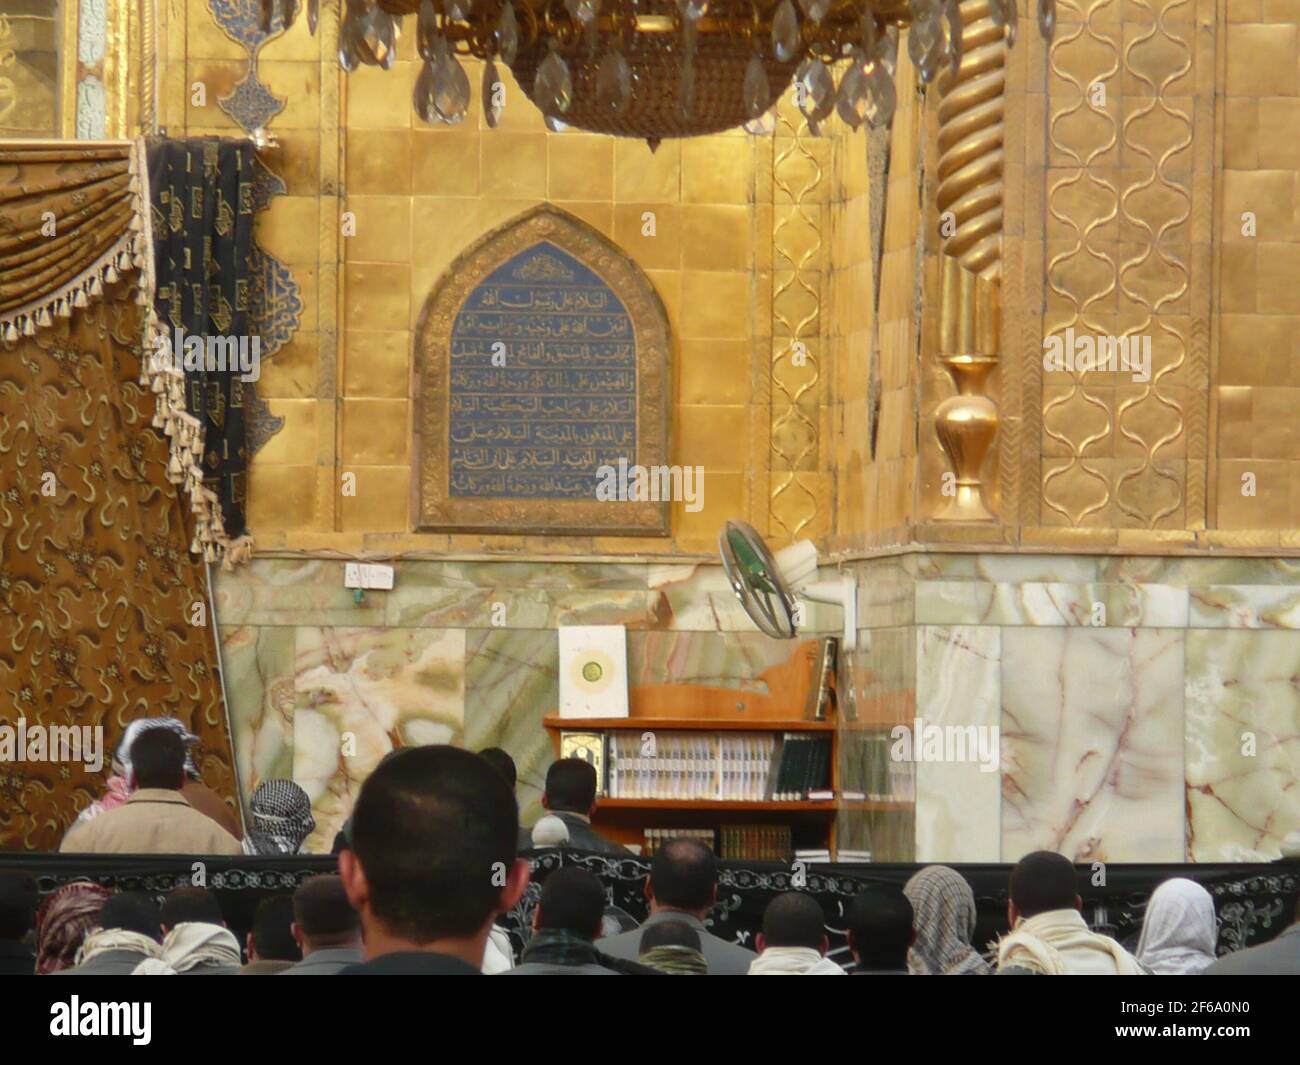 Najaf, Irak - 27 avril 2015 : photos du Saint imam rilique ali dans la ville de najaf Banque D'Images